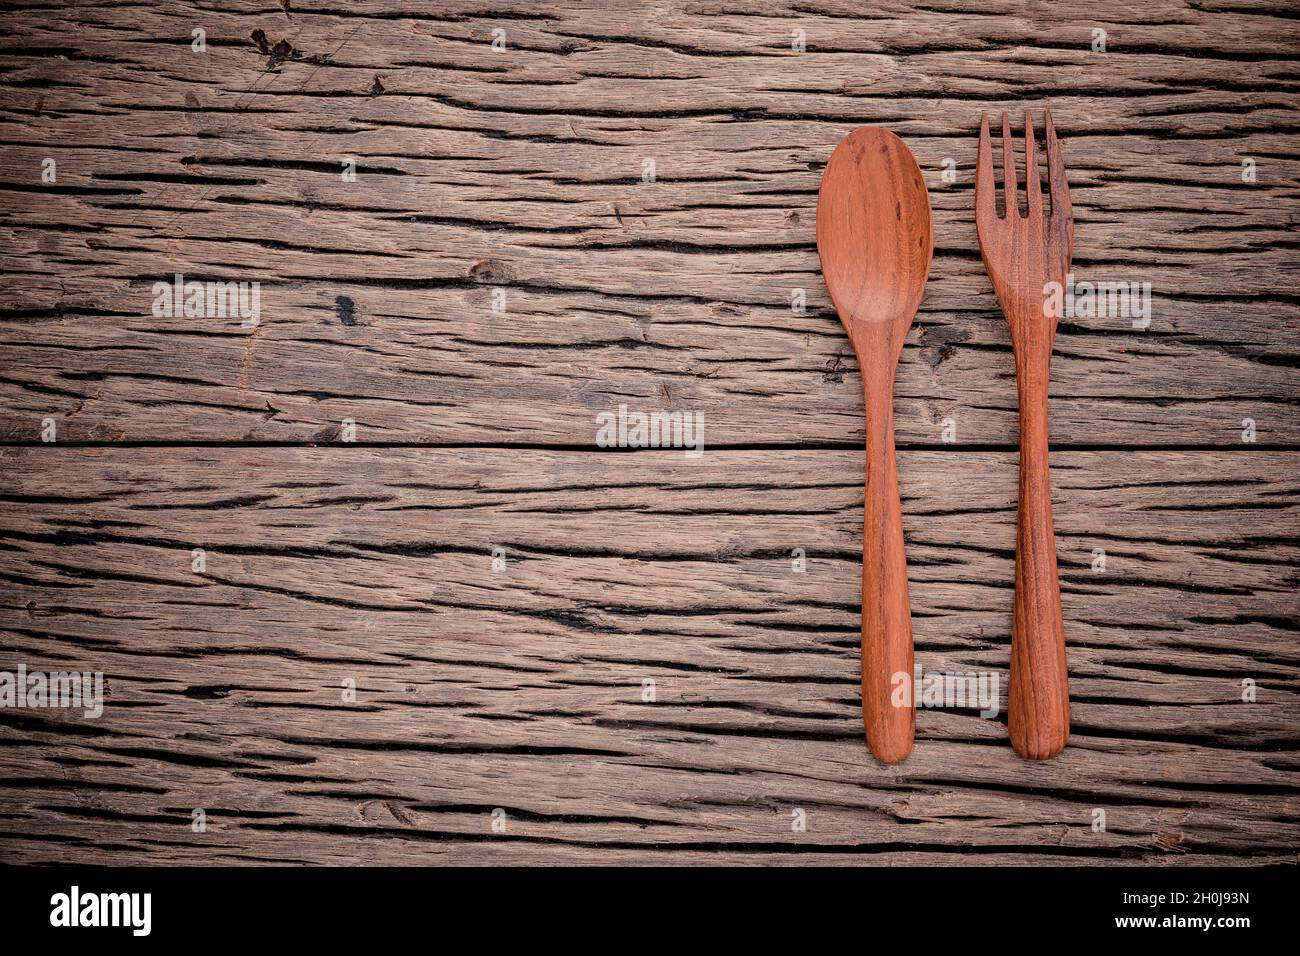 Với thiết kế hàng đầu với hình ảnh kết hợp của muỗng và nĩa, Menu Fork and Spoon sẽ khiến cho khách hàng độc lập hơn trong việc chọn lựa các món ăn một cách dễ dàng và nhanh chóng. Không chỉ với thiết kế xinh đẹp, những món ăn được chế biến từ những nguyên liệu tuyệt vời và được thực hiện bởi những đầu bếp tài ba, đảm bảo sẽ làm quý khách hài lòng.